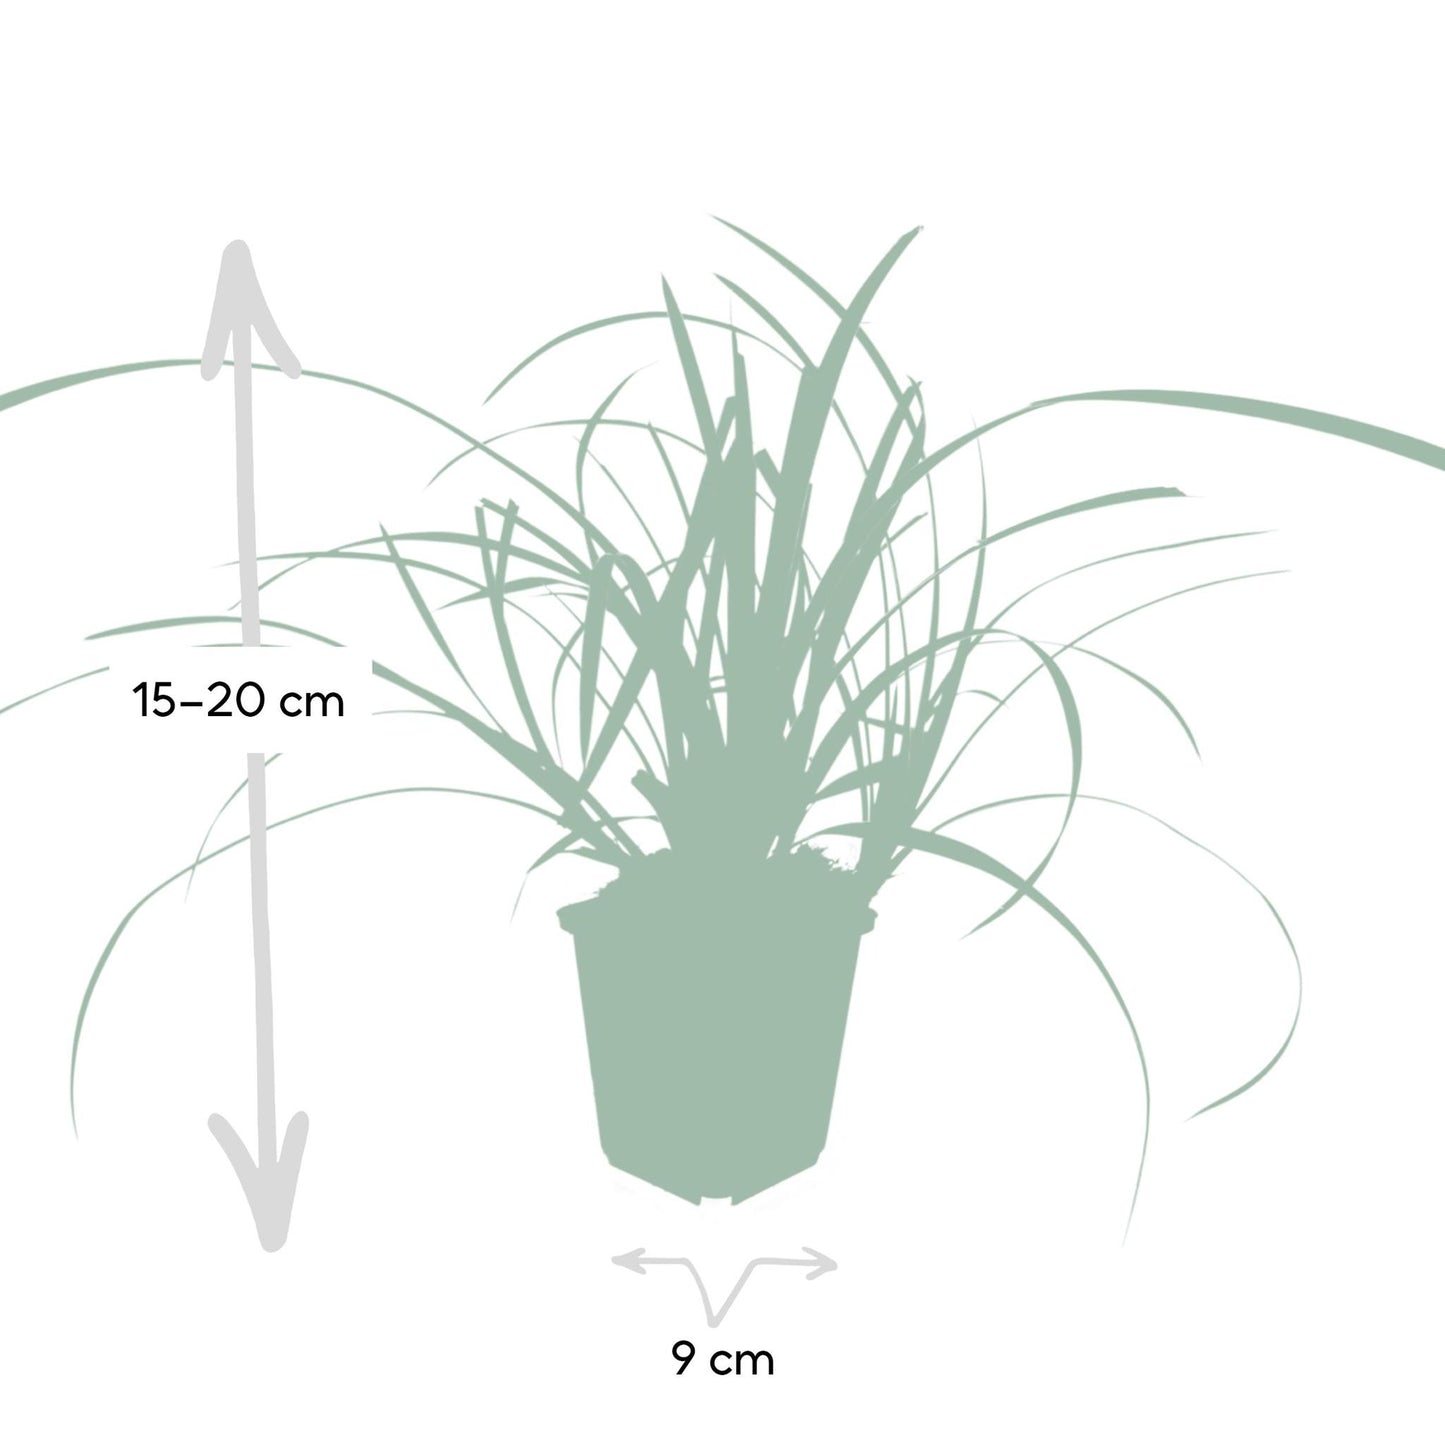 6x Carex morrowii 'Ice Dance' - ↕10-25cm - Ø9cm